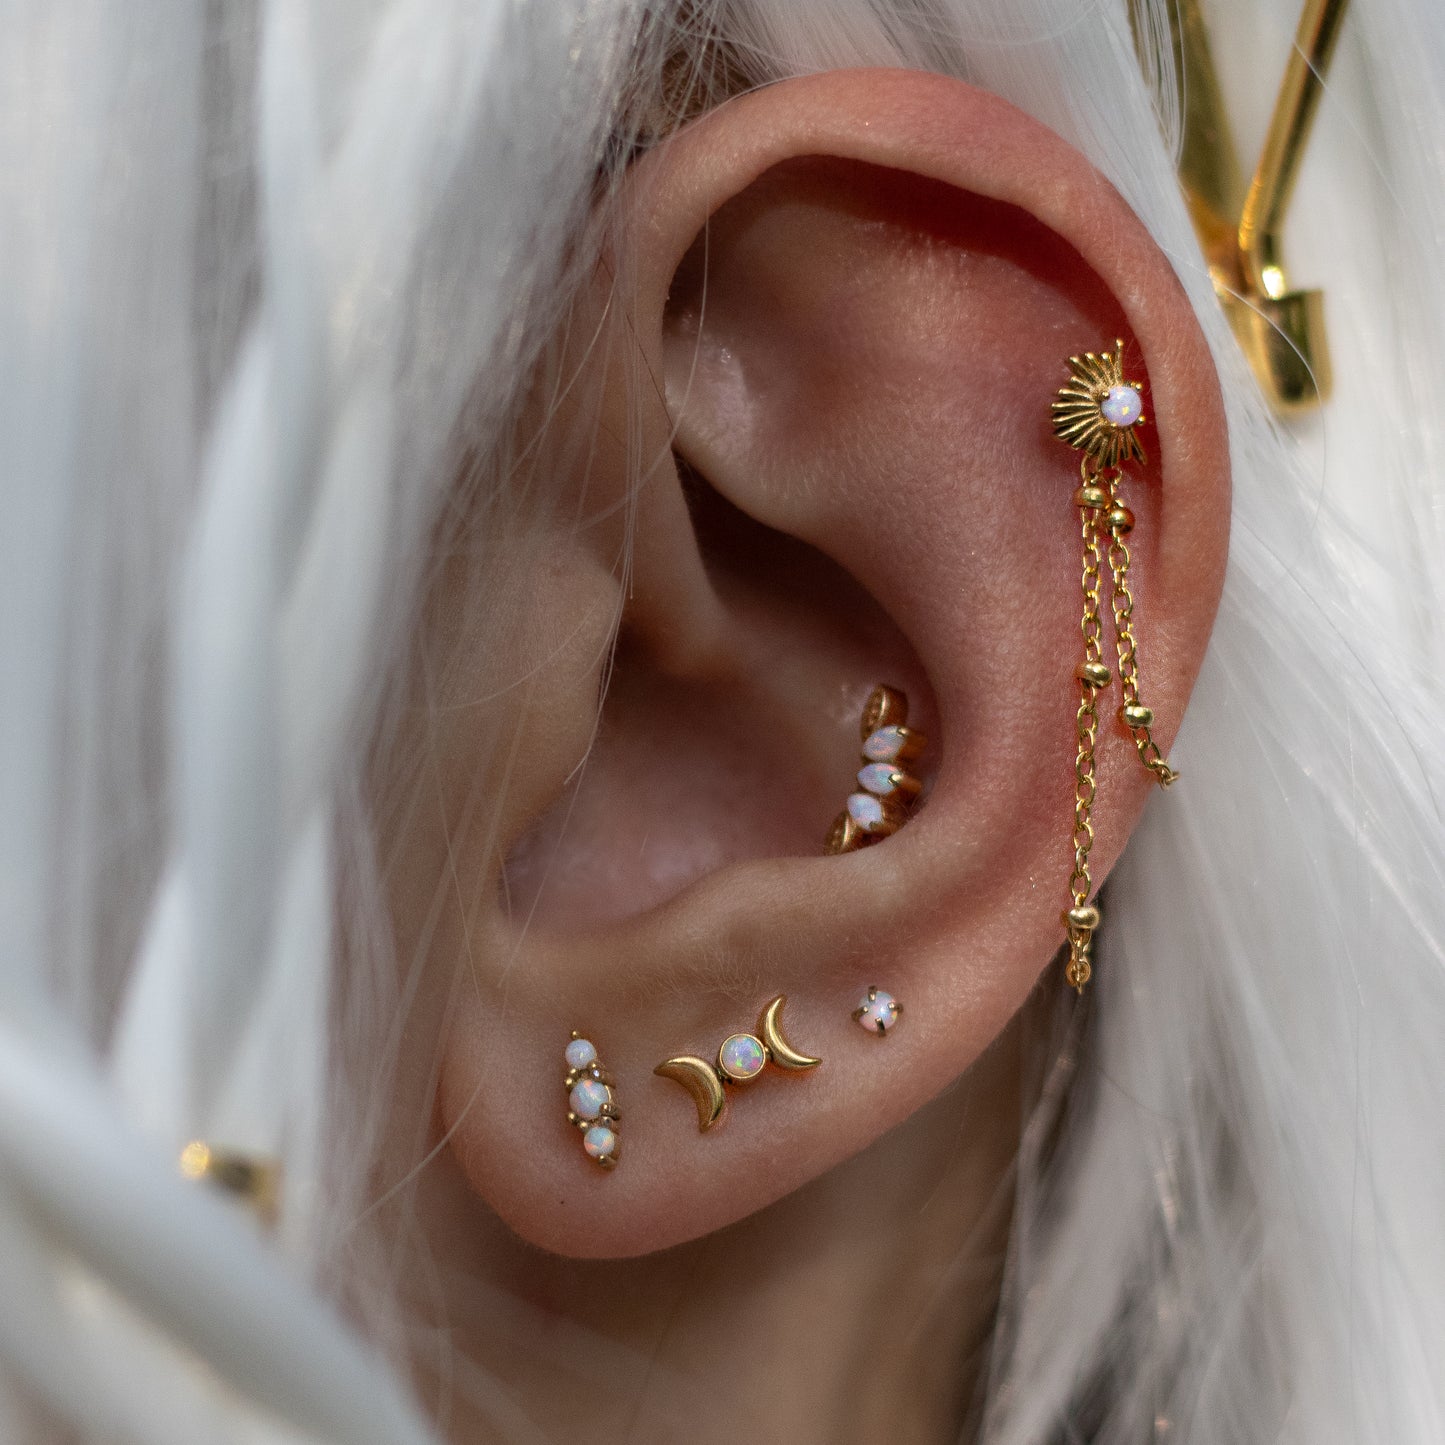 Labret hélix conch piercing bijou oreille cartilage